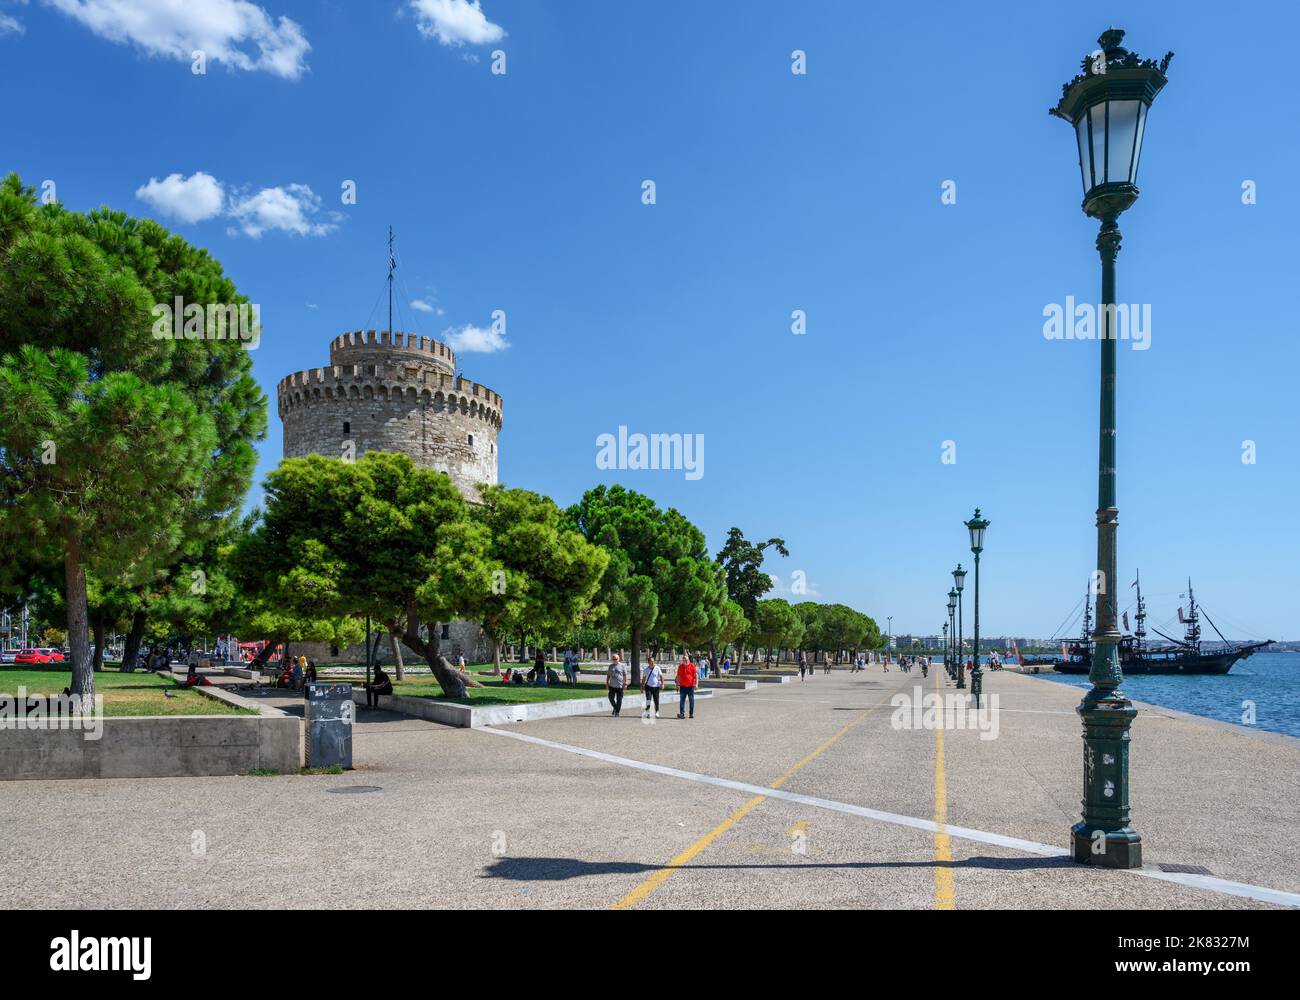 Thessaloniki. Uferpromenade und Weißer Turm (Lefkos Pyrgos), Nikis Avenue, Thessaloniki, Mazedonien, Griechenland Stockfoto